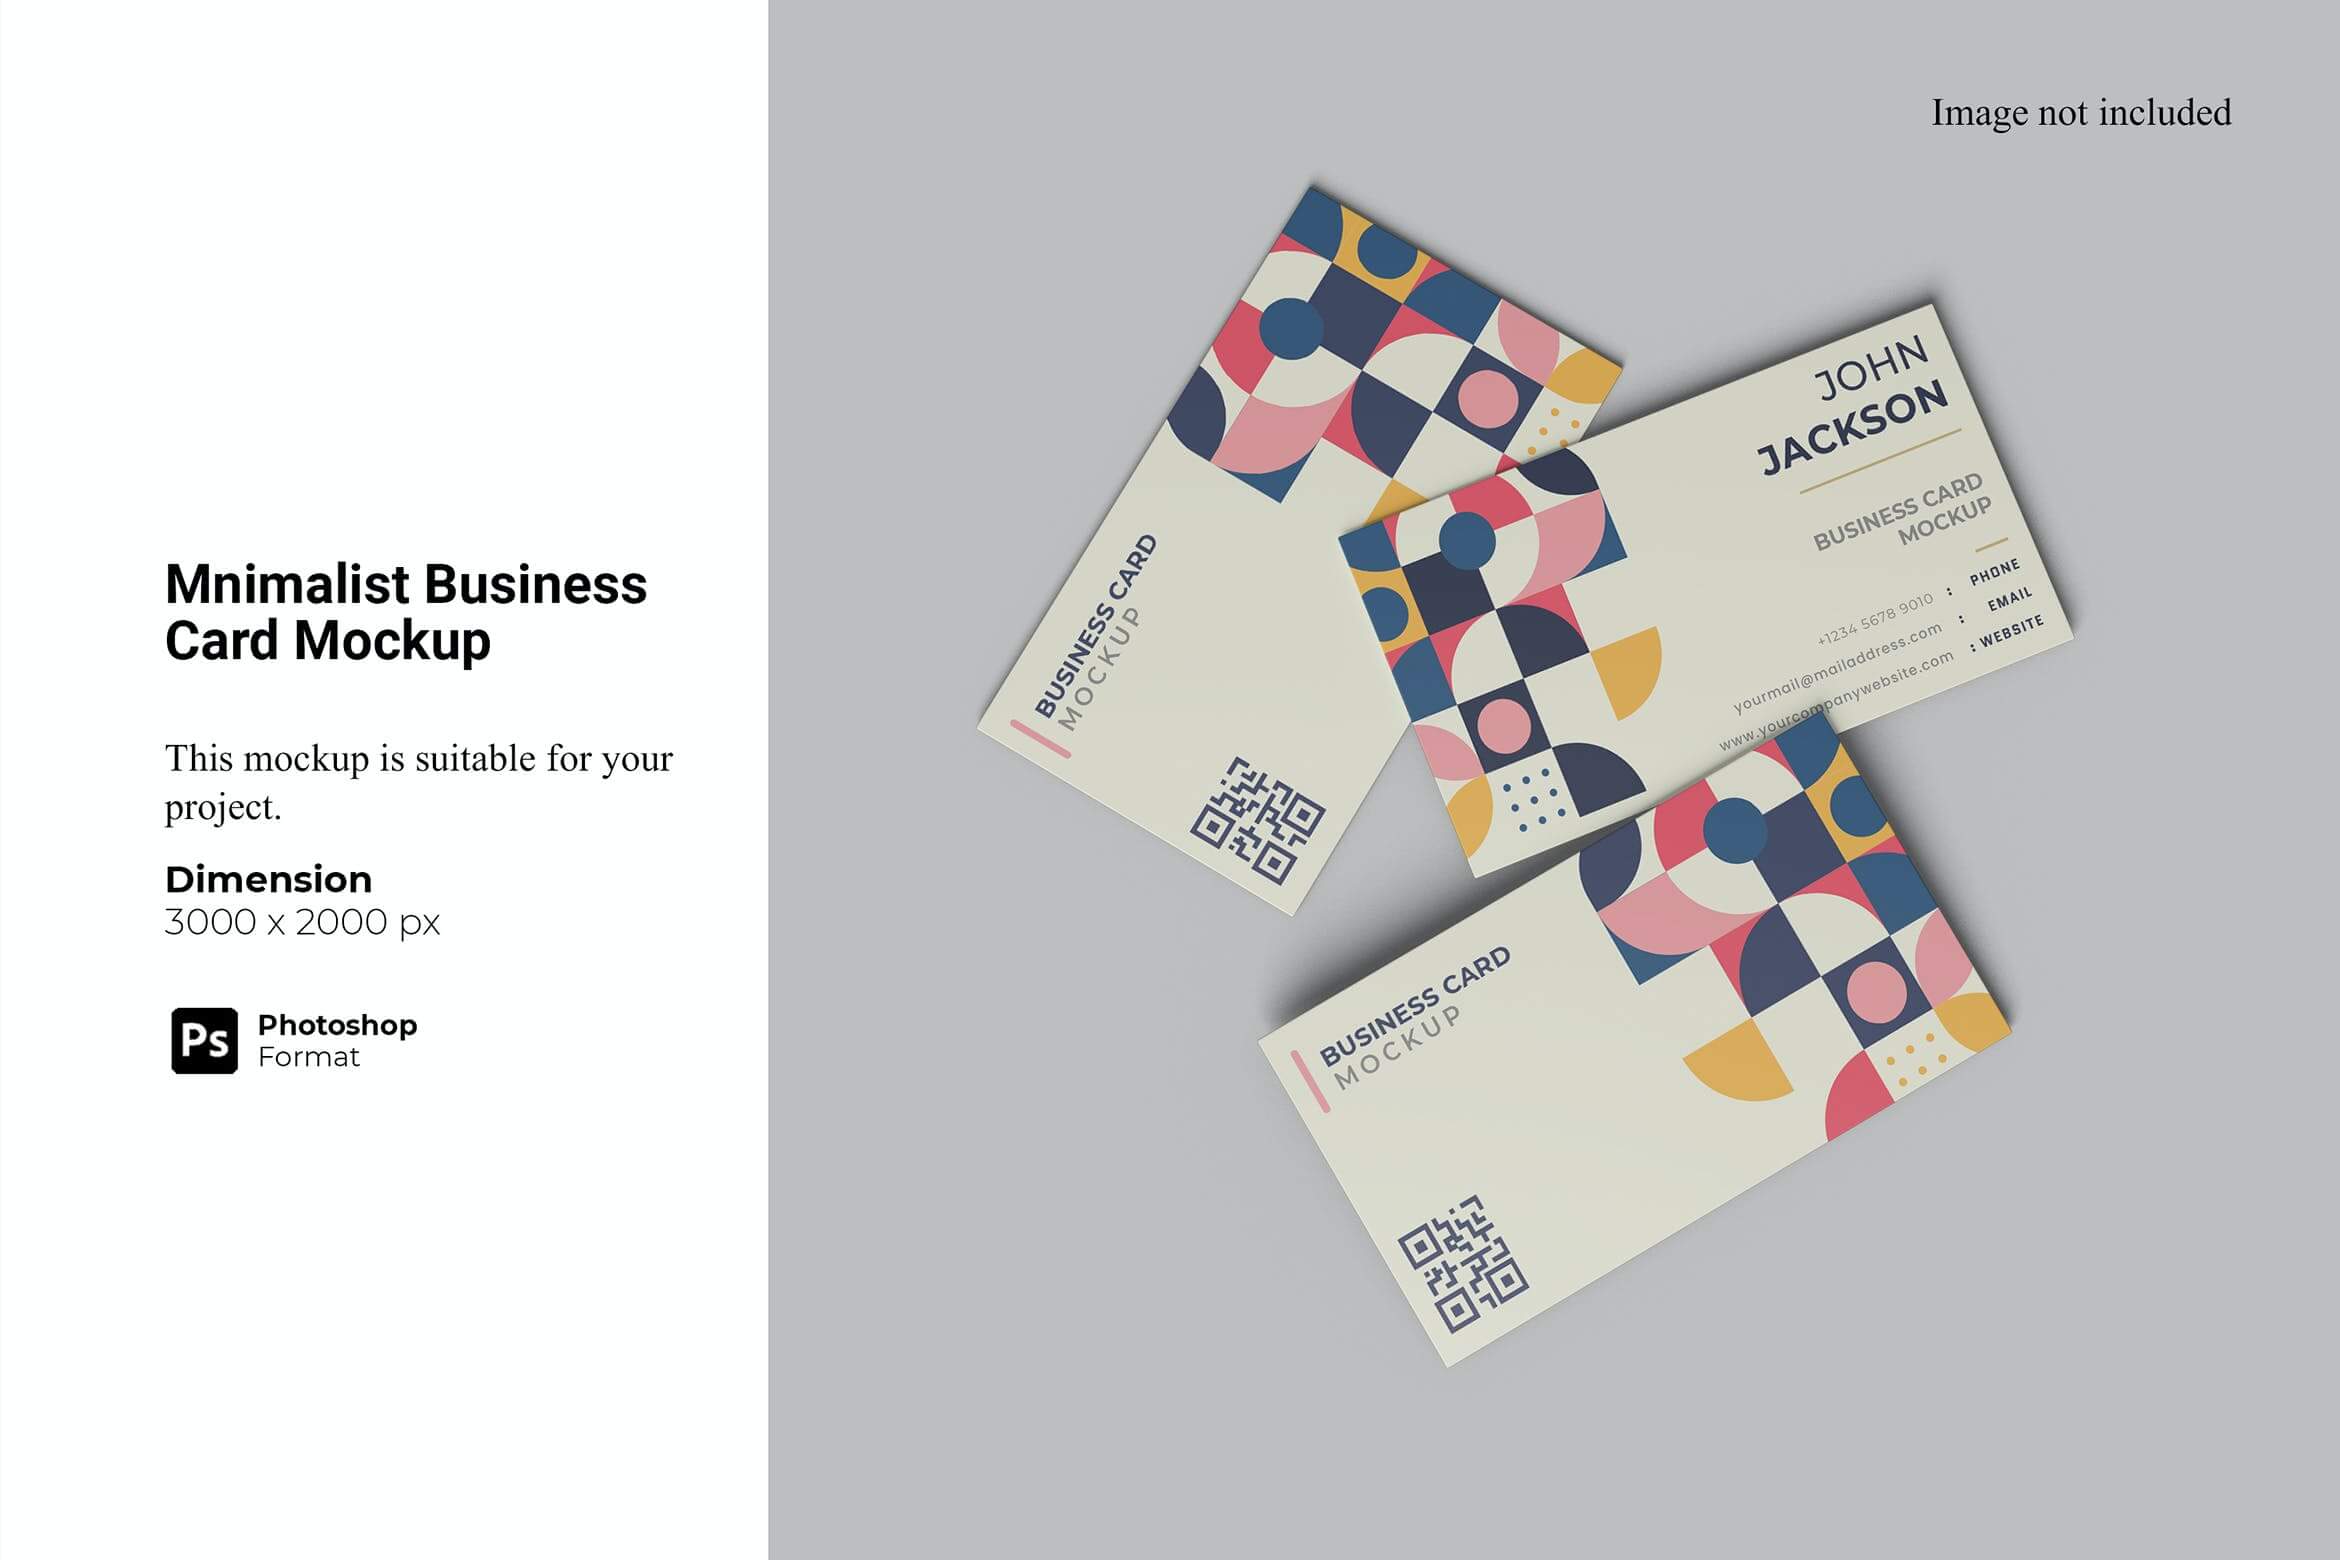 极简主义名片样机模板素材Minimalist Business Card Mockup插图